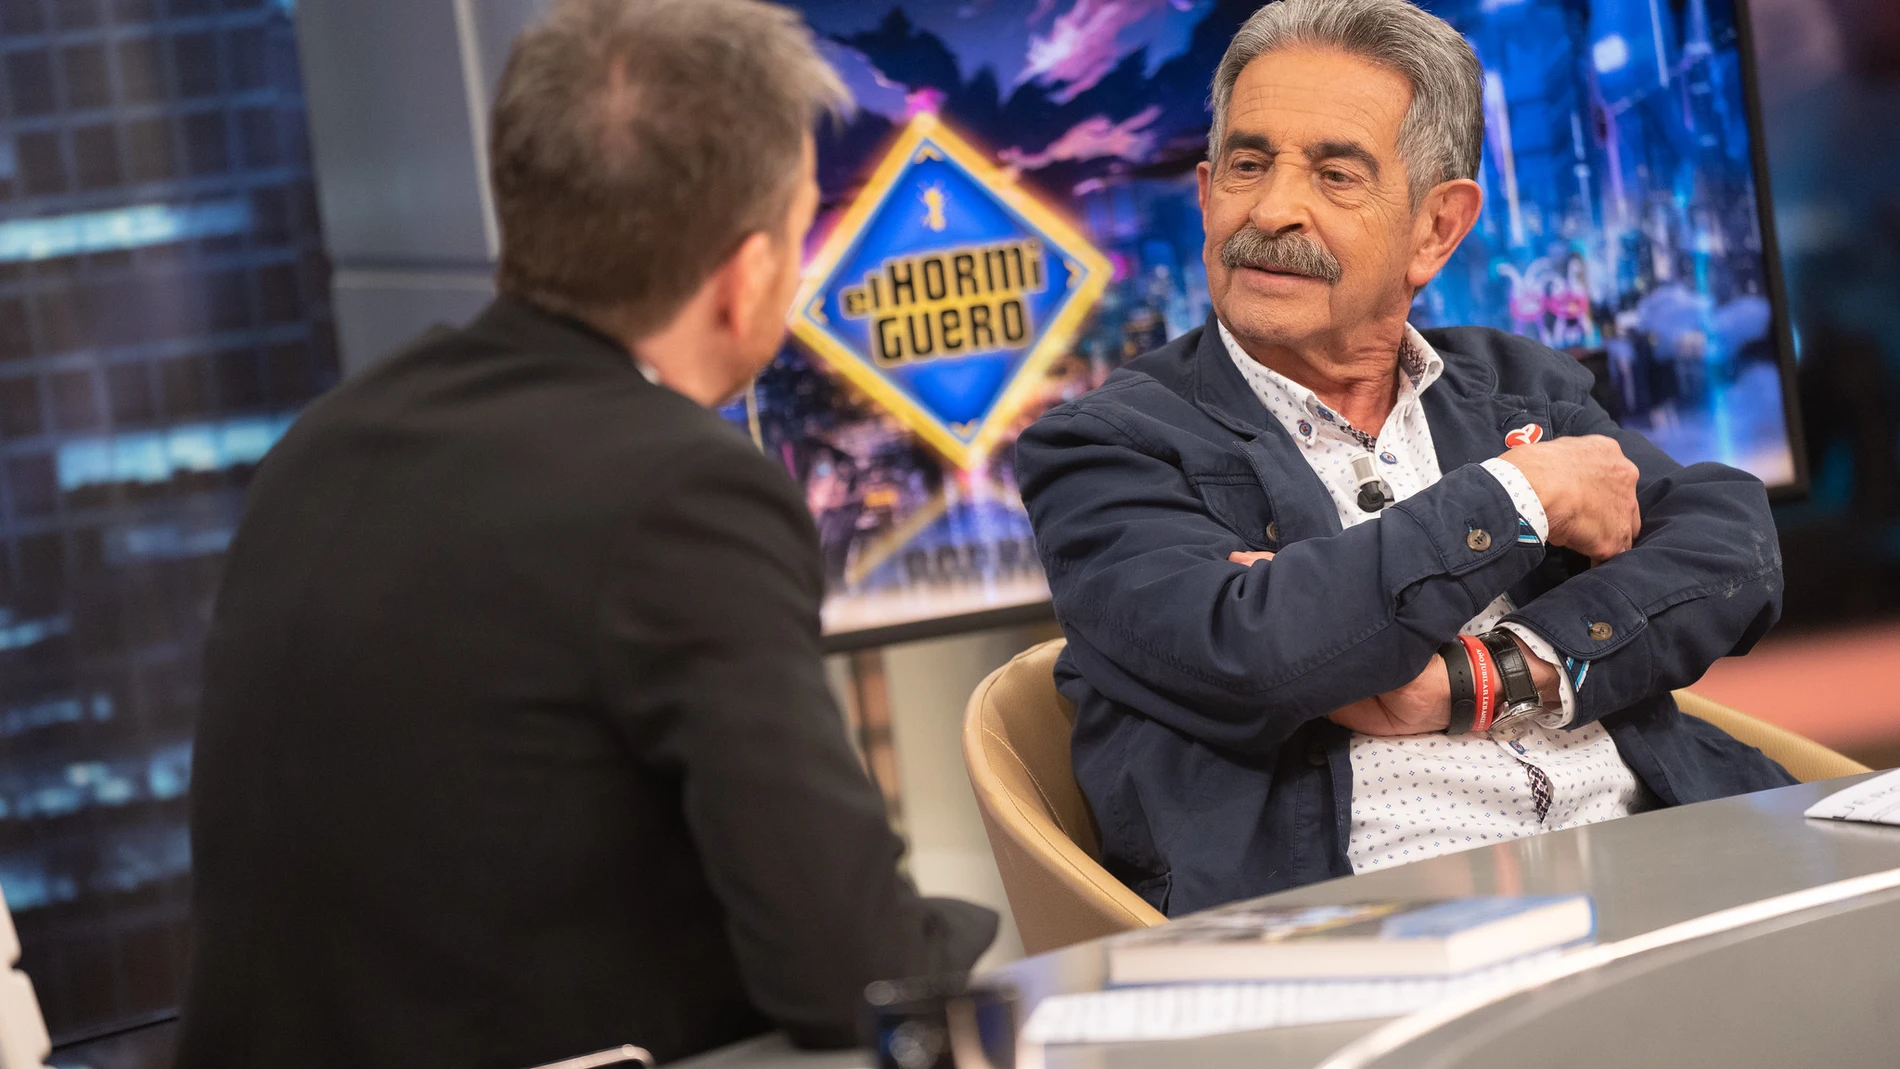 Miguel Ángel Revilla cuenta que Pedro Sánchez le invitó a comer y se fue sin pagar: "Me debe 98,50 euros"